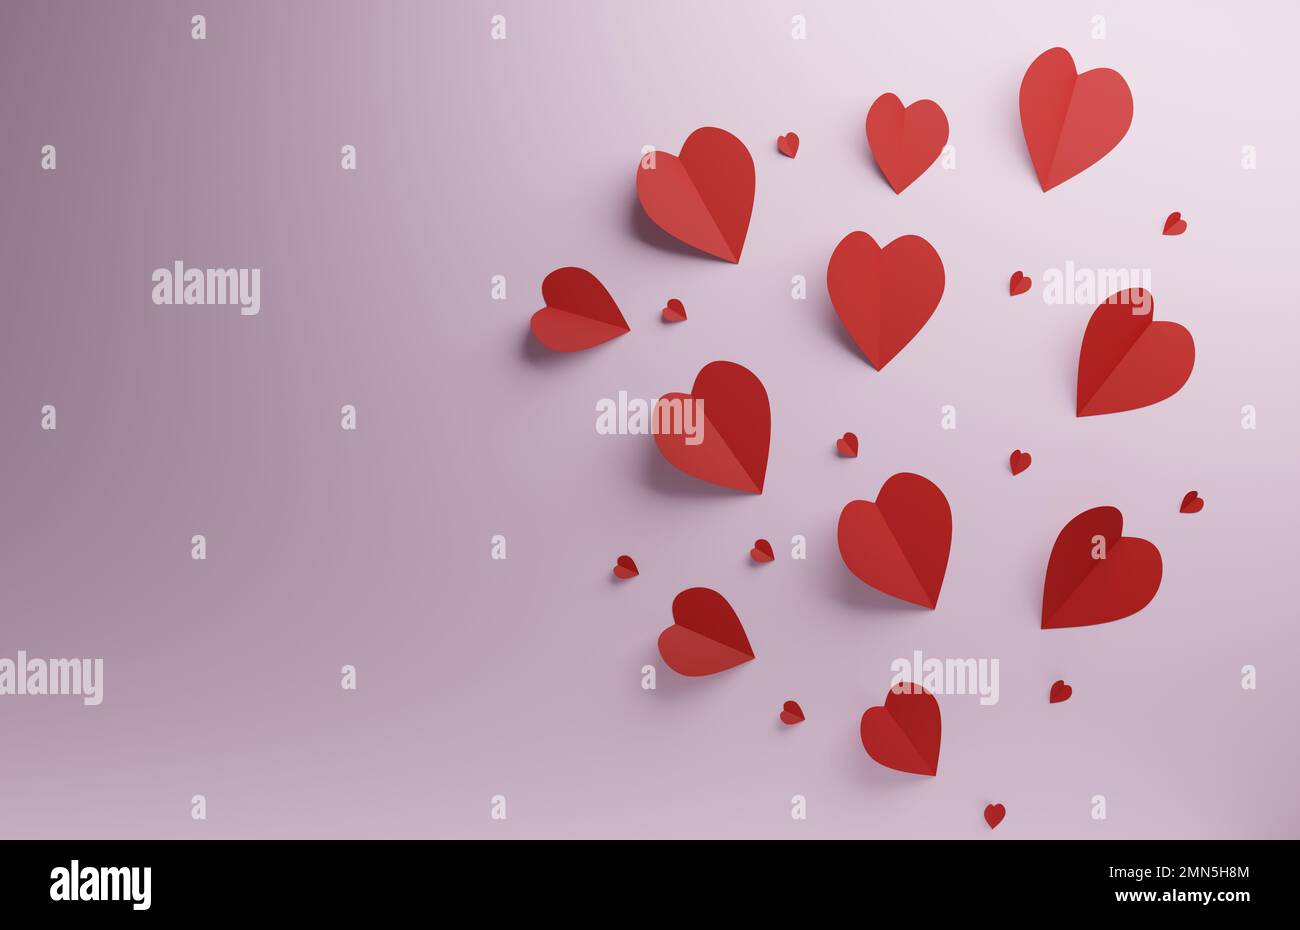 Formes de coeur rouge sur fond rose, fond de concept de Saint Valentin ou de mariage, rendu 3D Banque D'Images